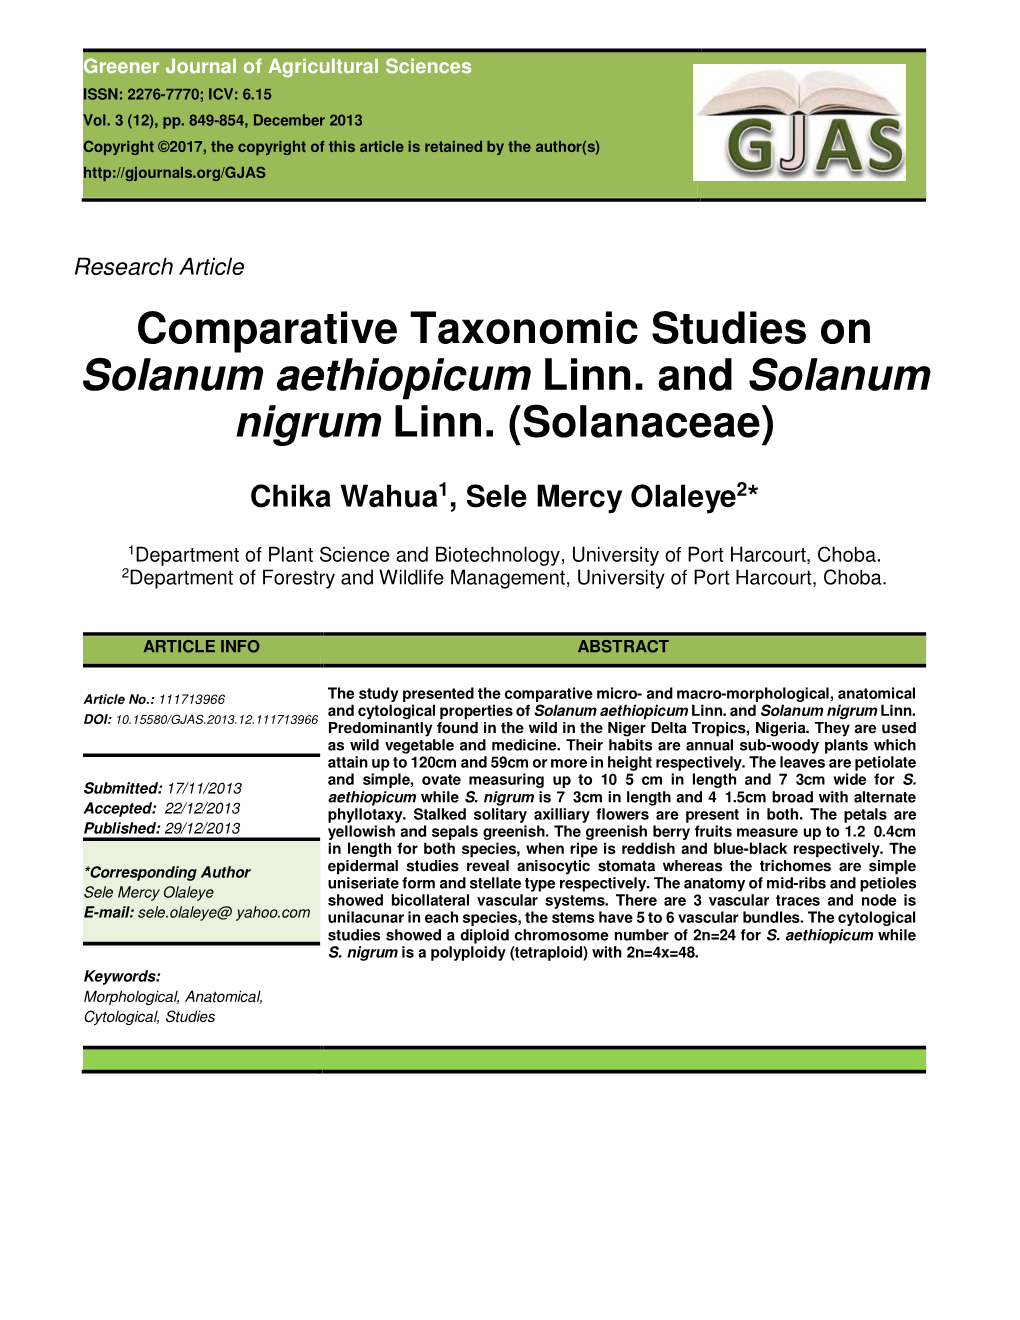 Comparative Taxonomic Studies on Solanum Aethiopicum Linn. and Solanum Nigrum Linn